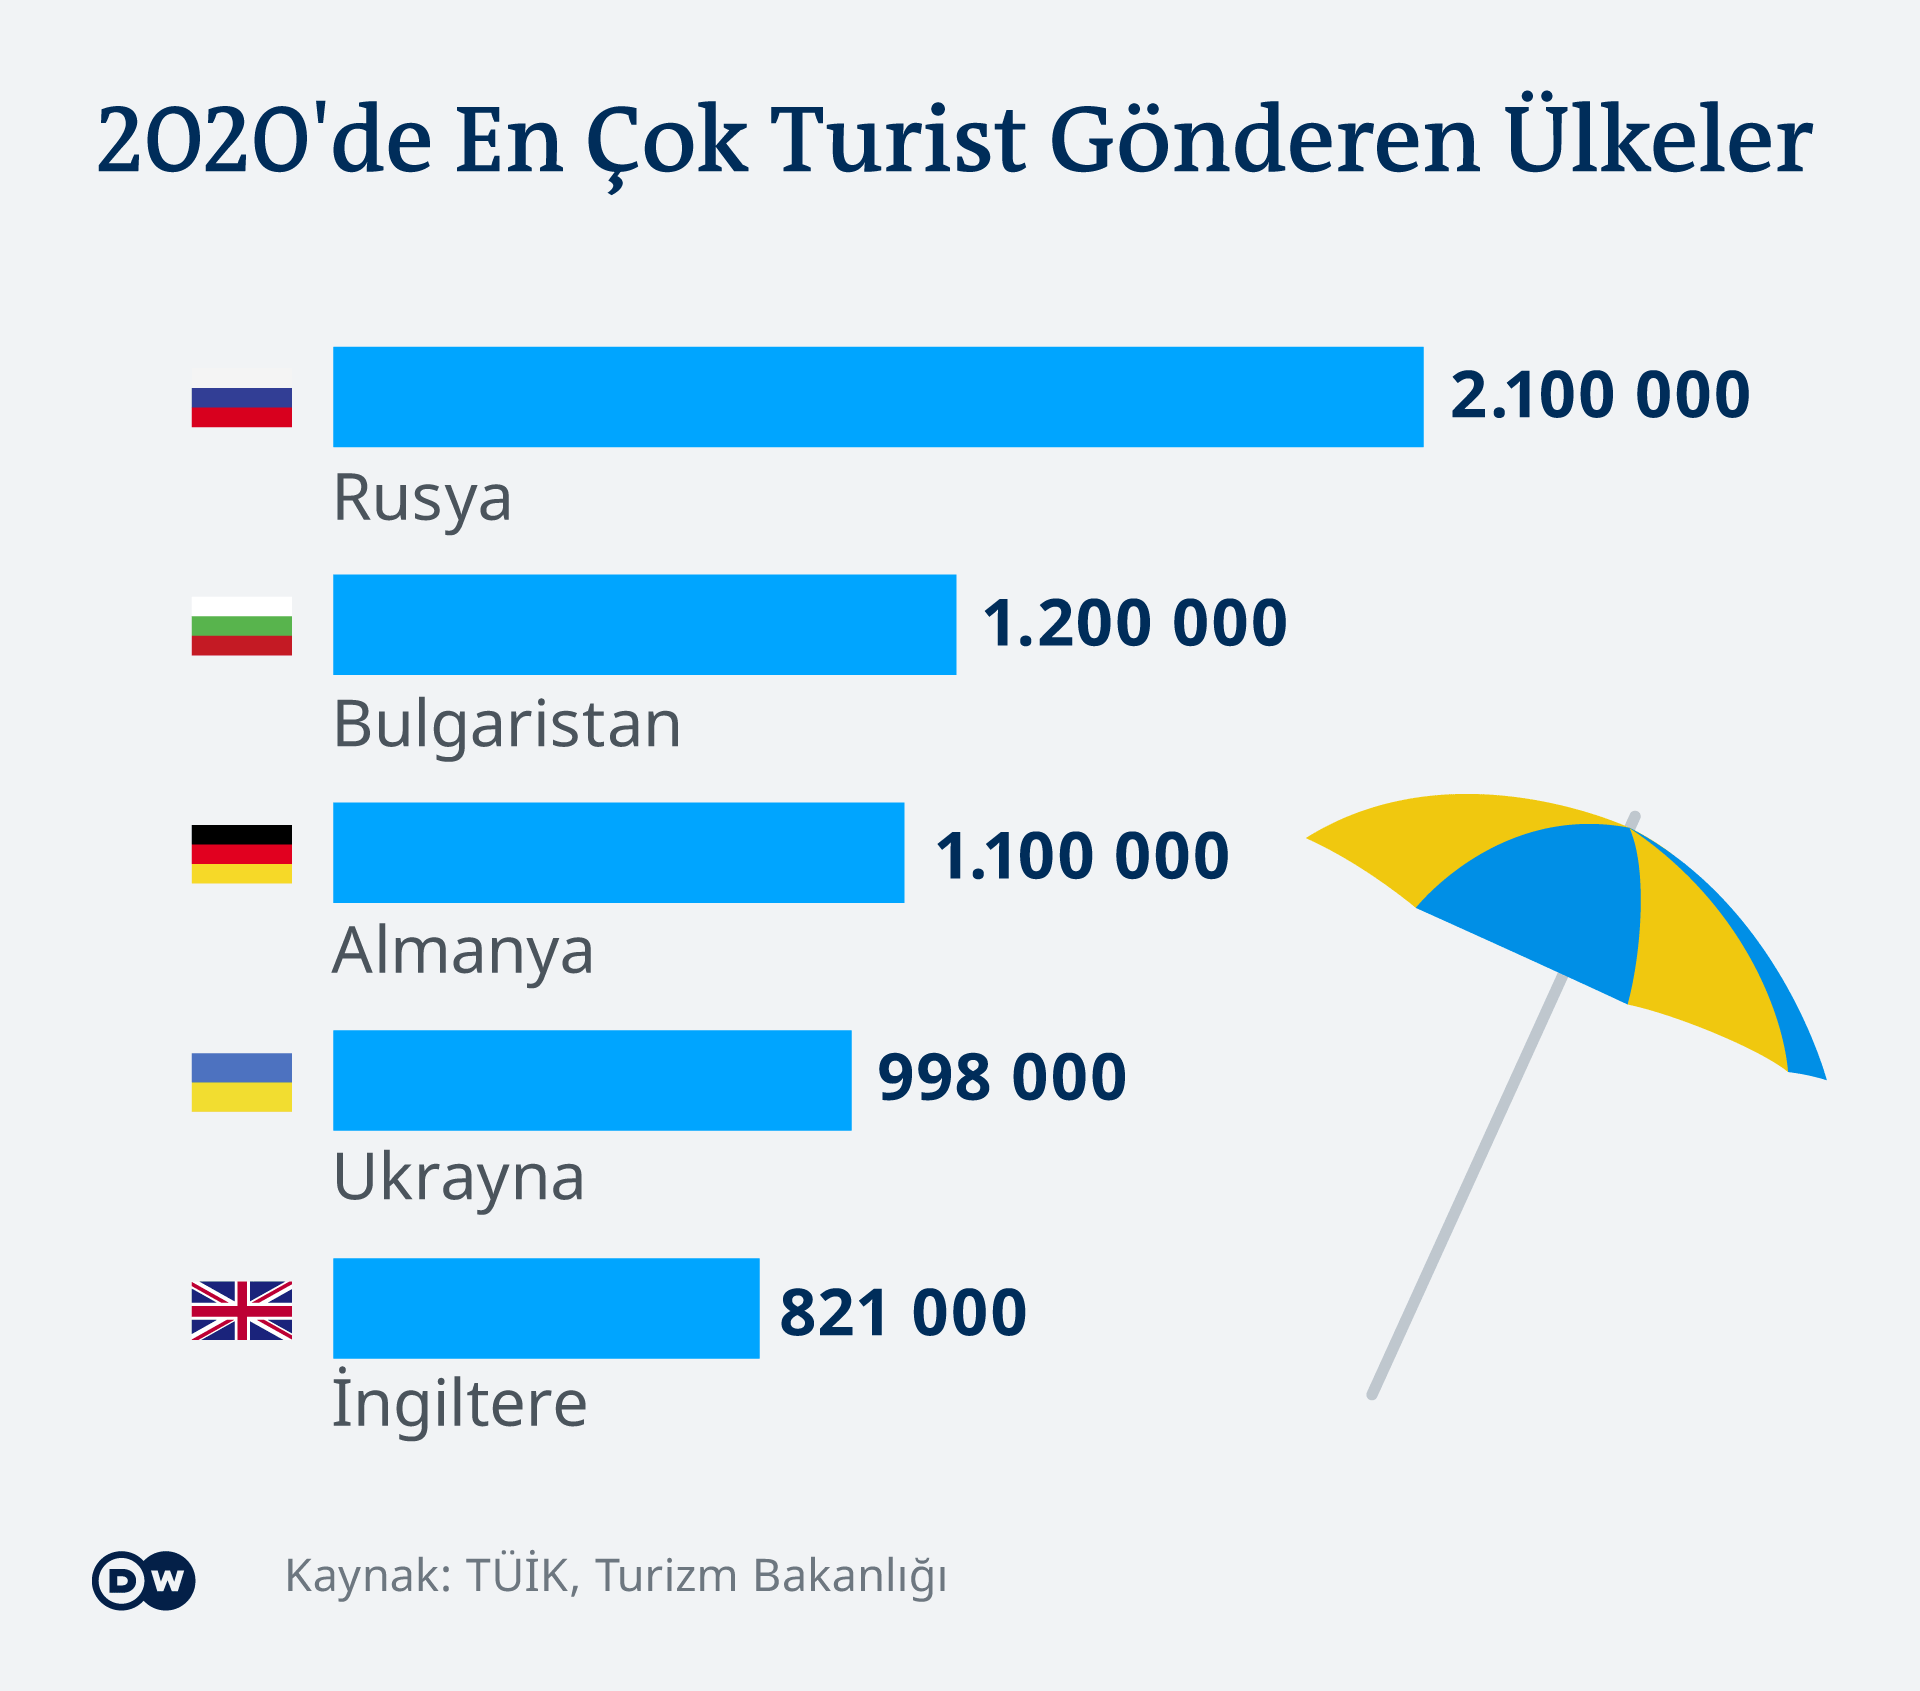 Infografik - Tournismus Trükei - TR